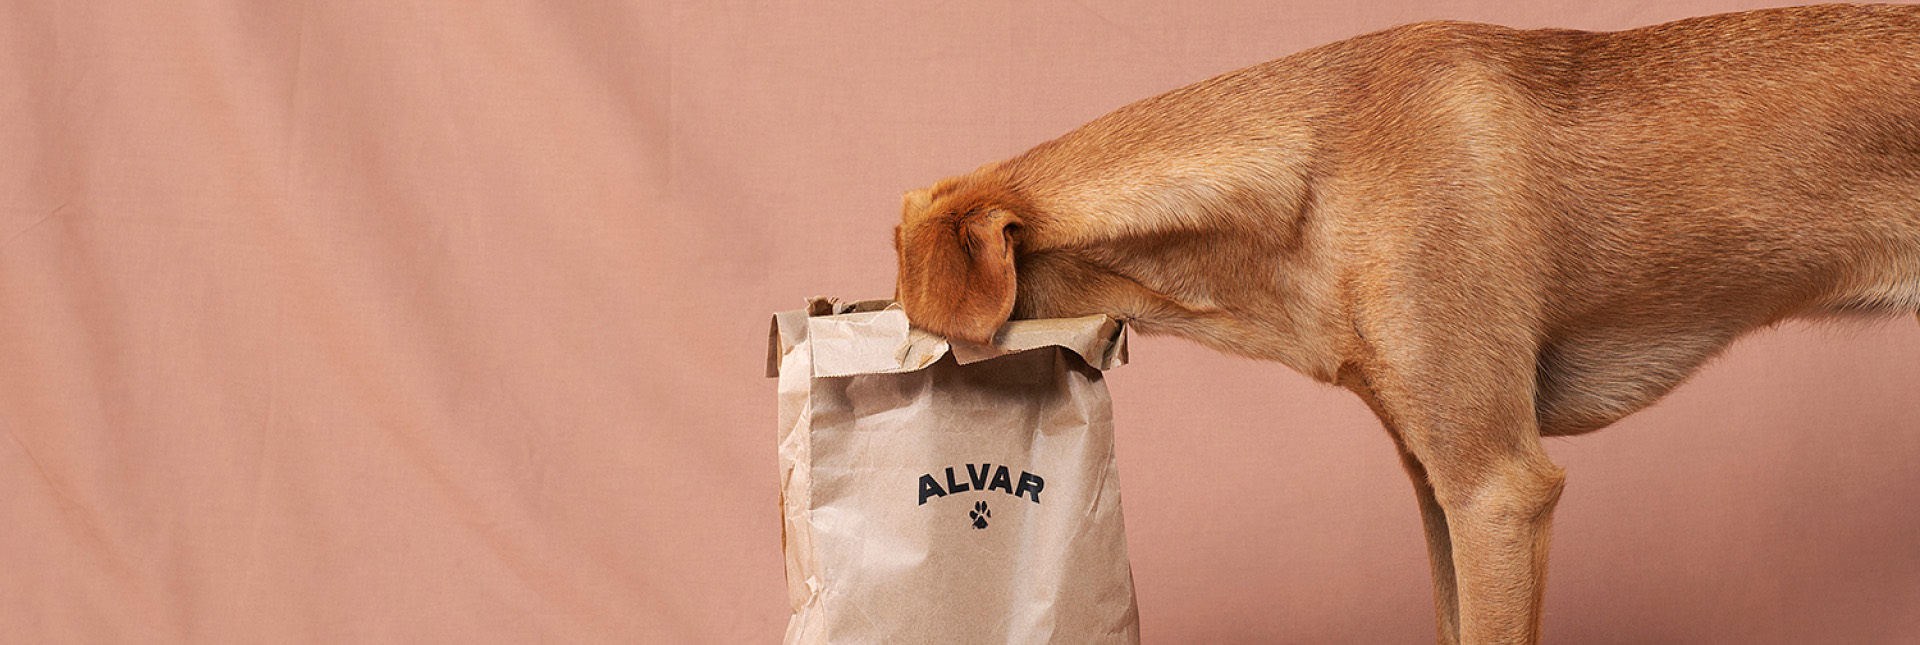 Foder för rescue hundar som Sansa och andra stora hundar hittar du från Alvar Pet.